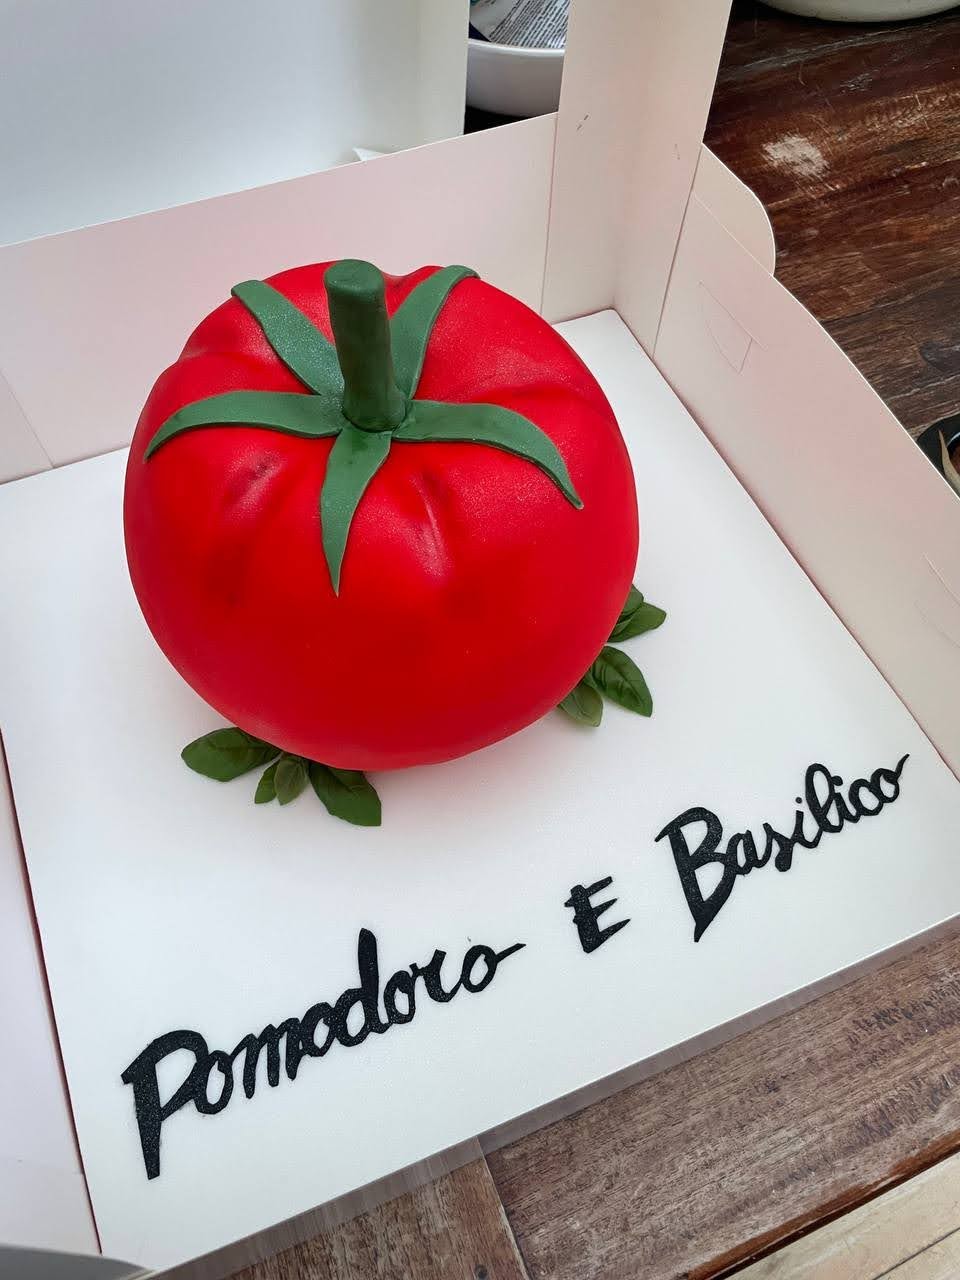 Pomodoro e Basilico, Tomato Cake